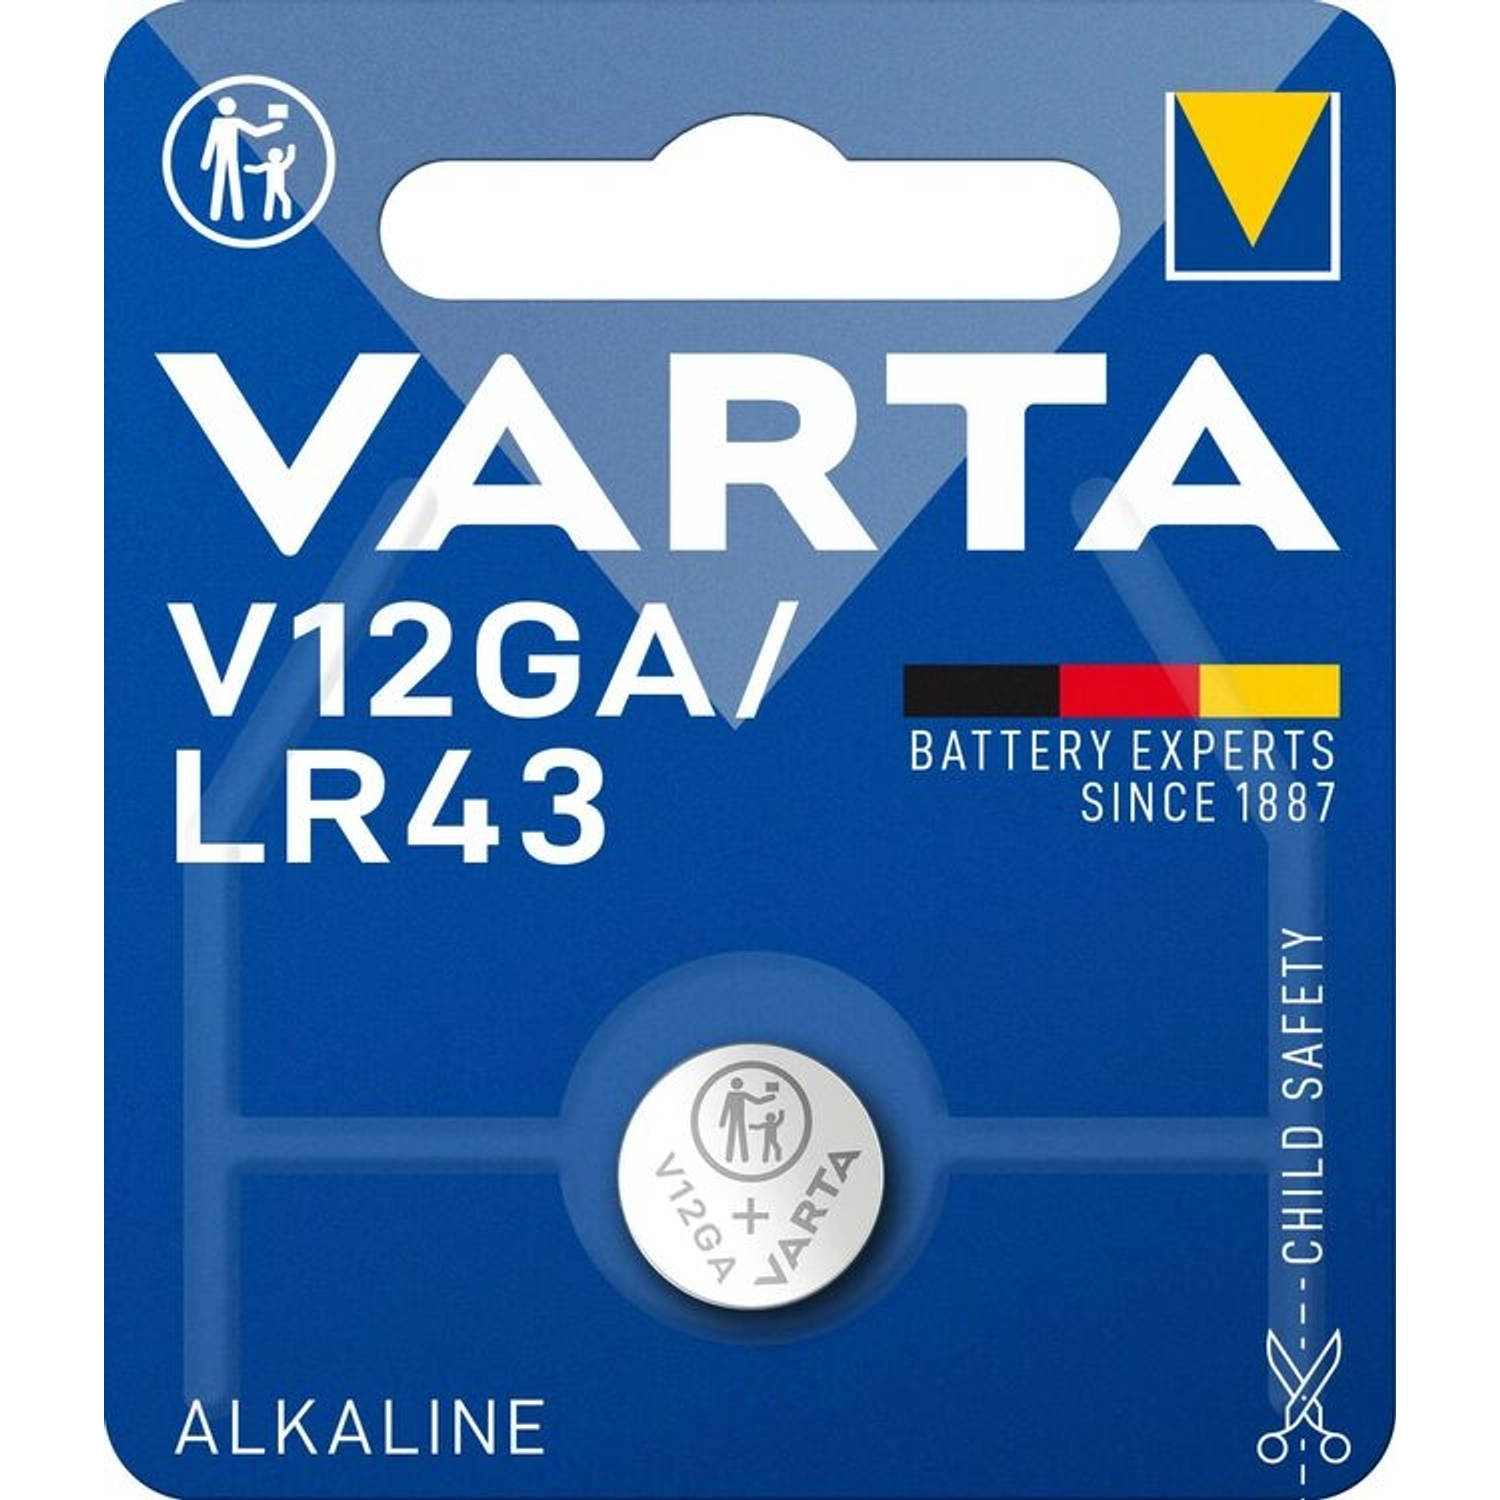 Varta Alkaline V12GA/LR43 blister 1